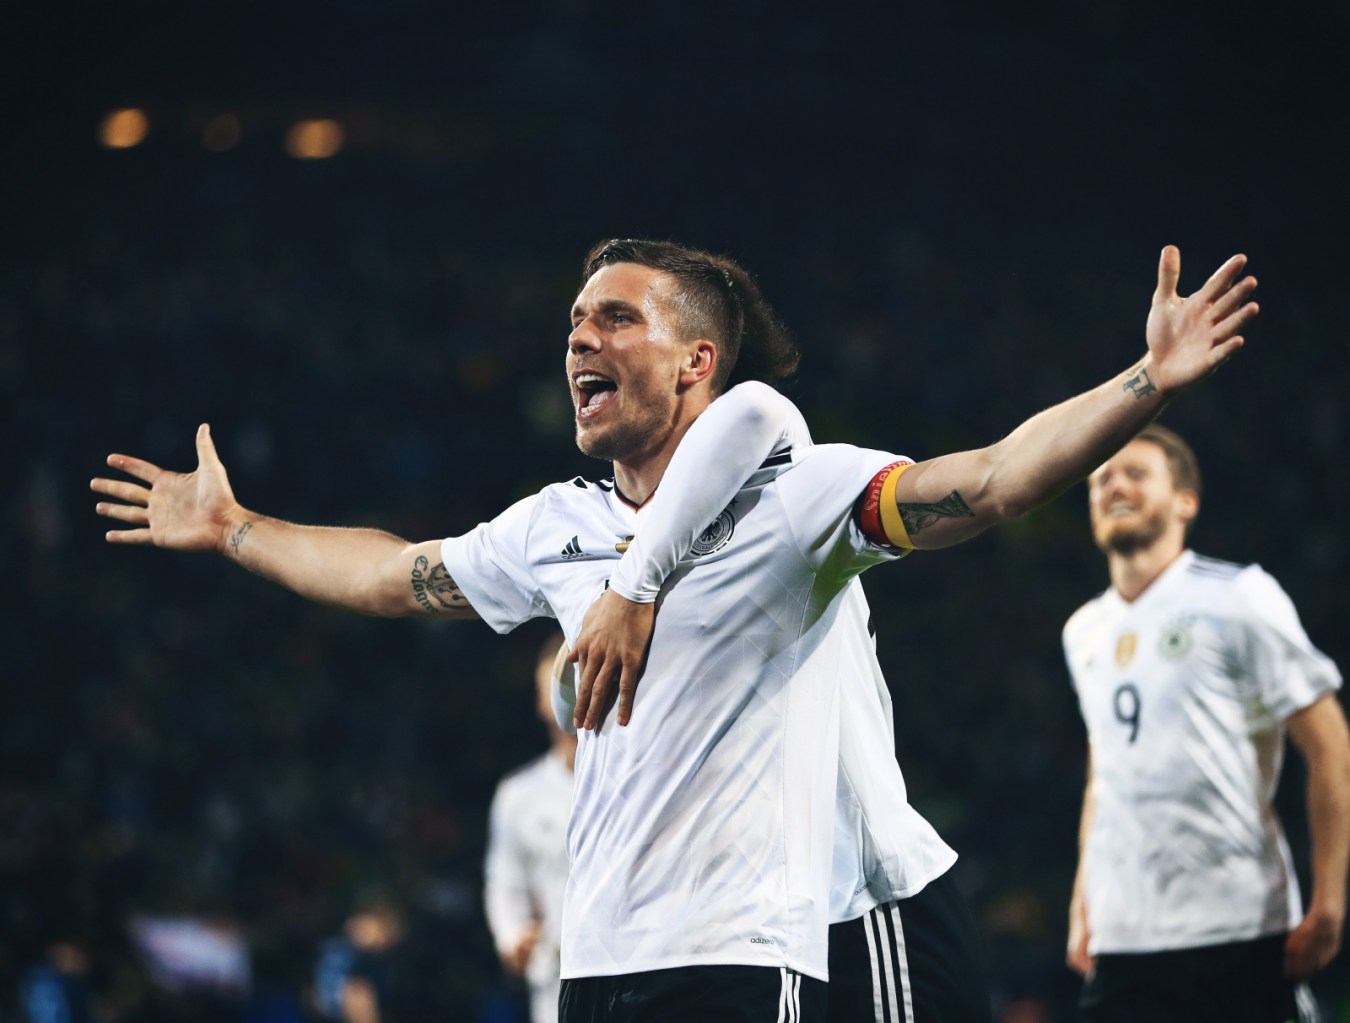 کلن-آلمان-بایرن مونیخ-جام جهانی